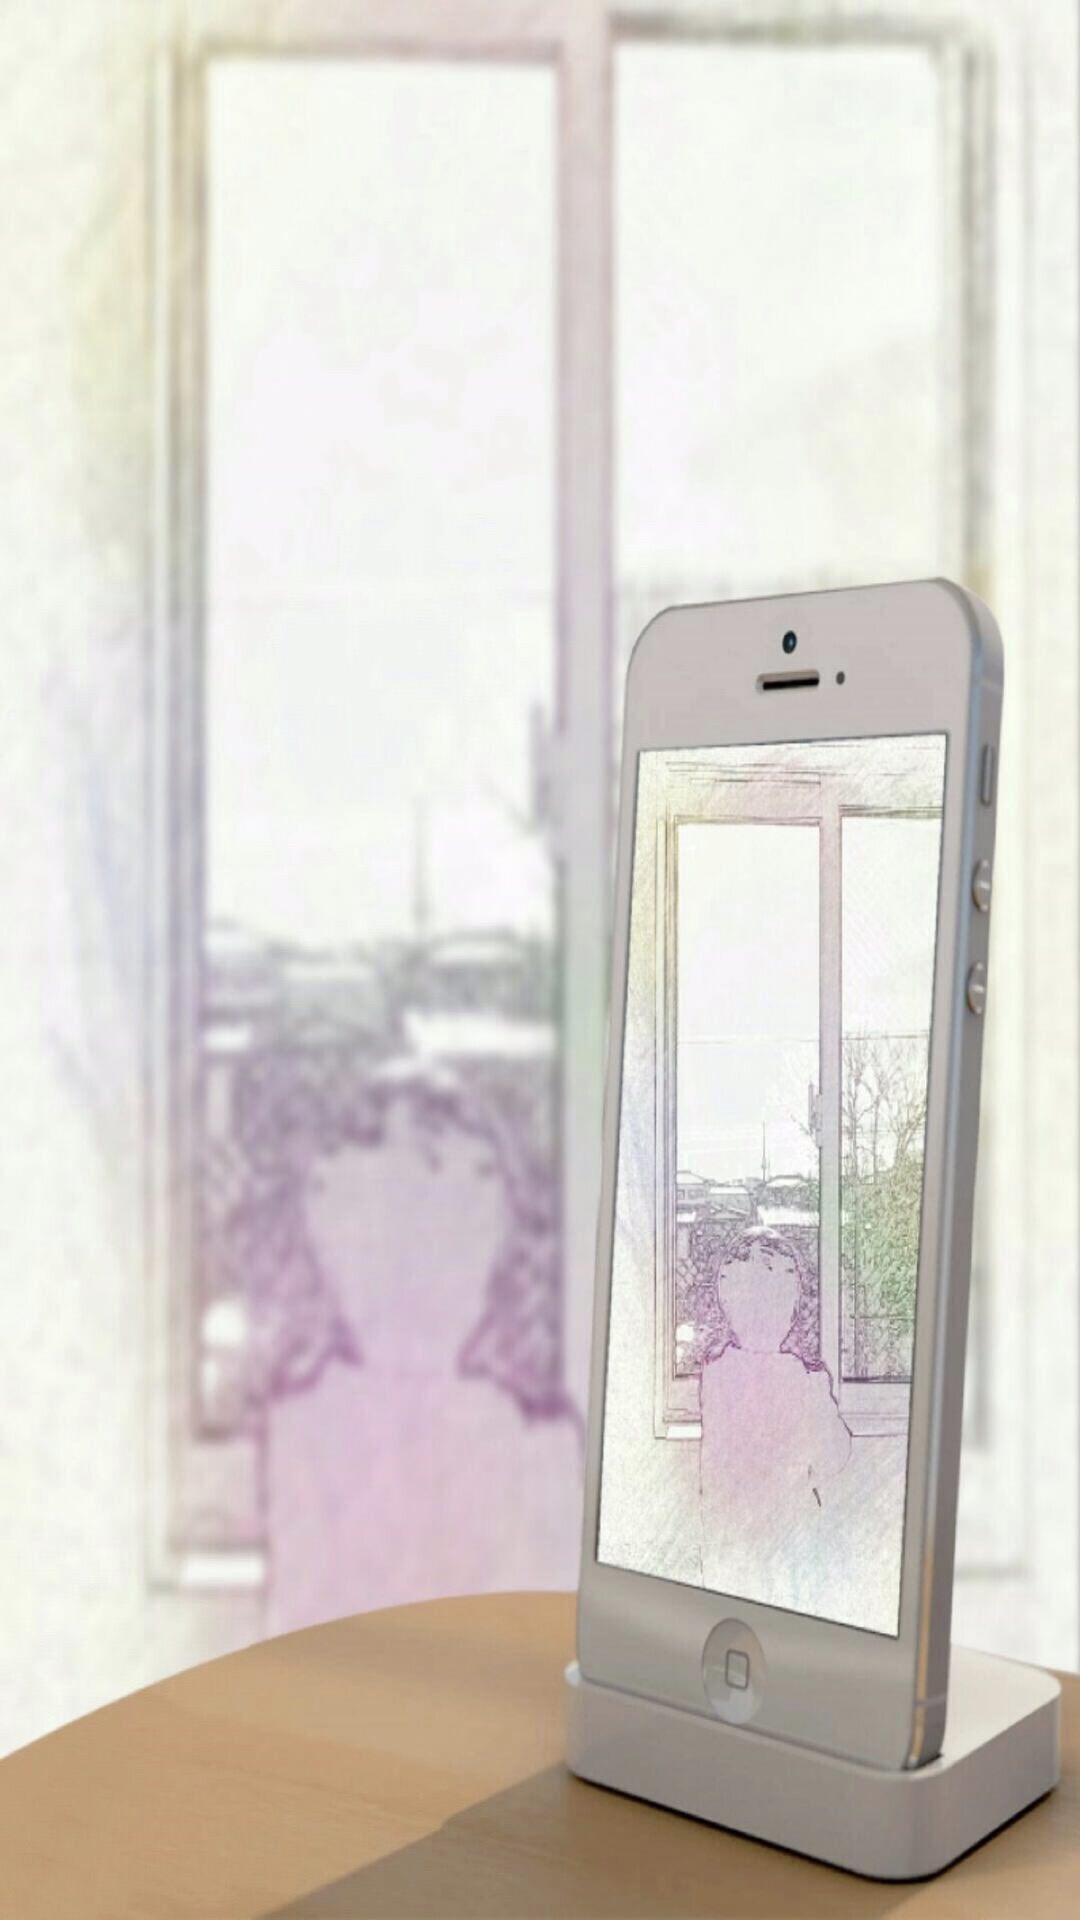 iPhone 6s Plus / iPhone 6 Plus wallpaper